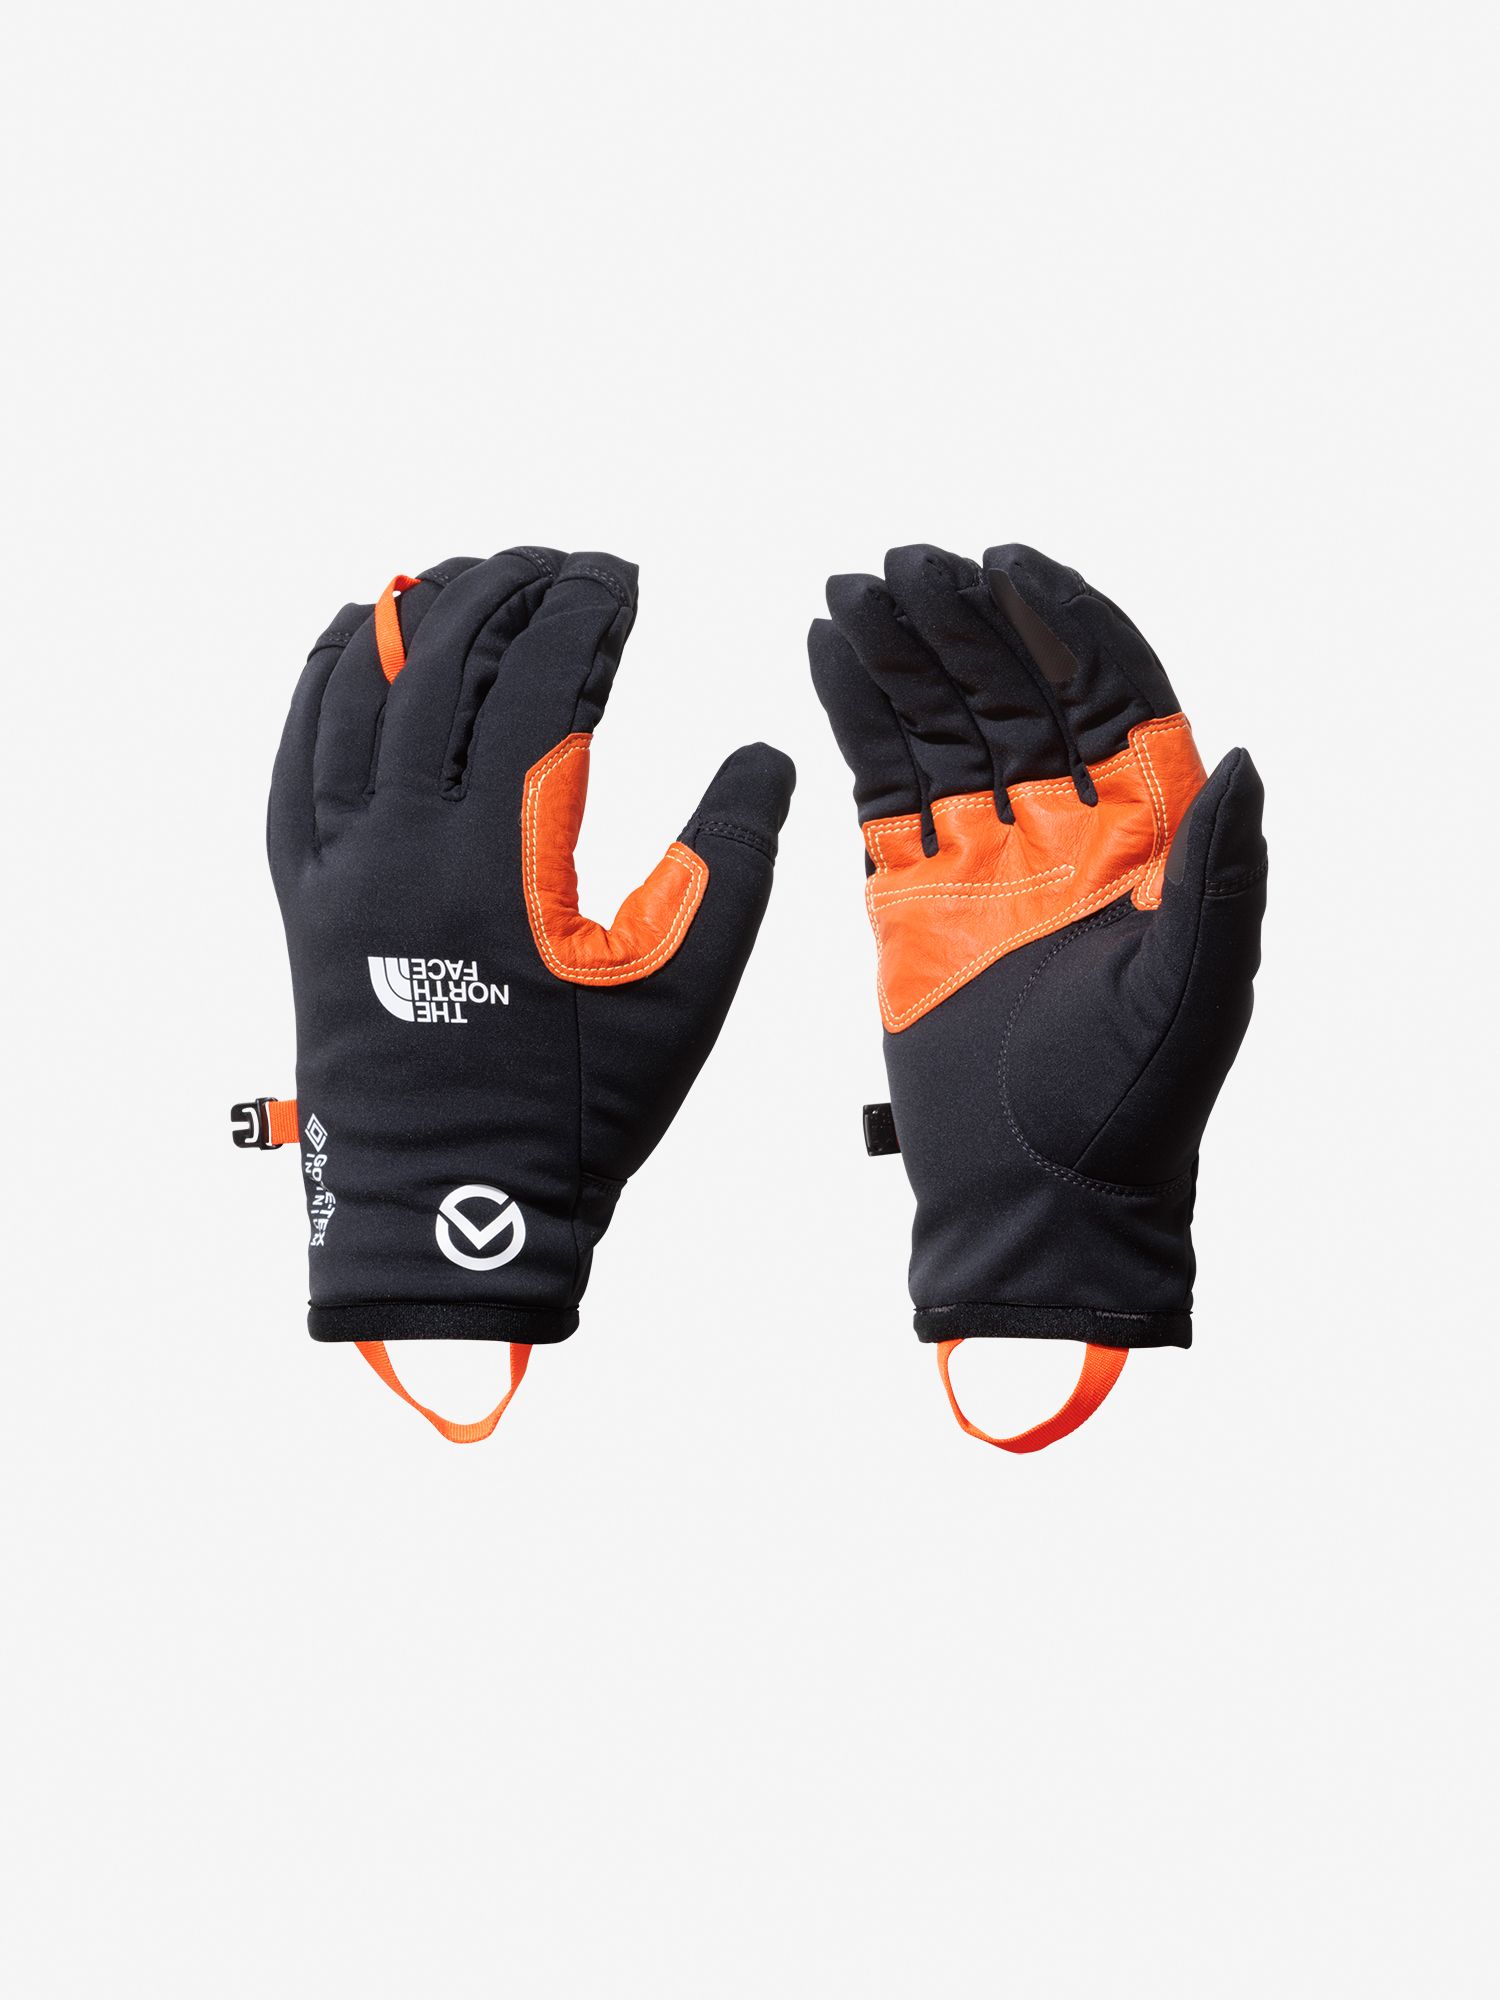 バイク手袋 レザーグローブ ショート通気 高級素材使用ブランド